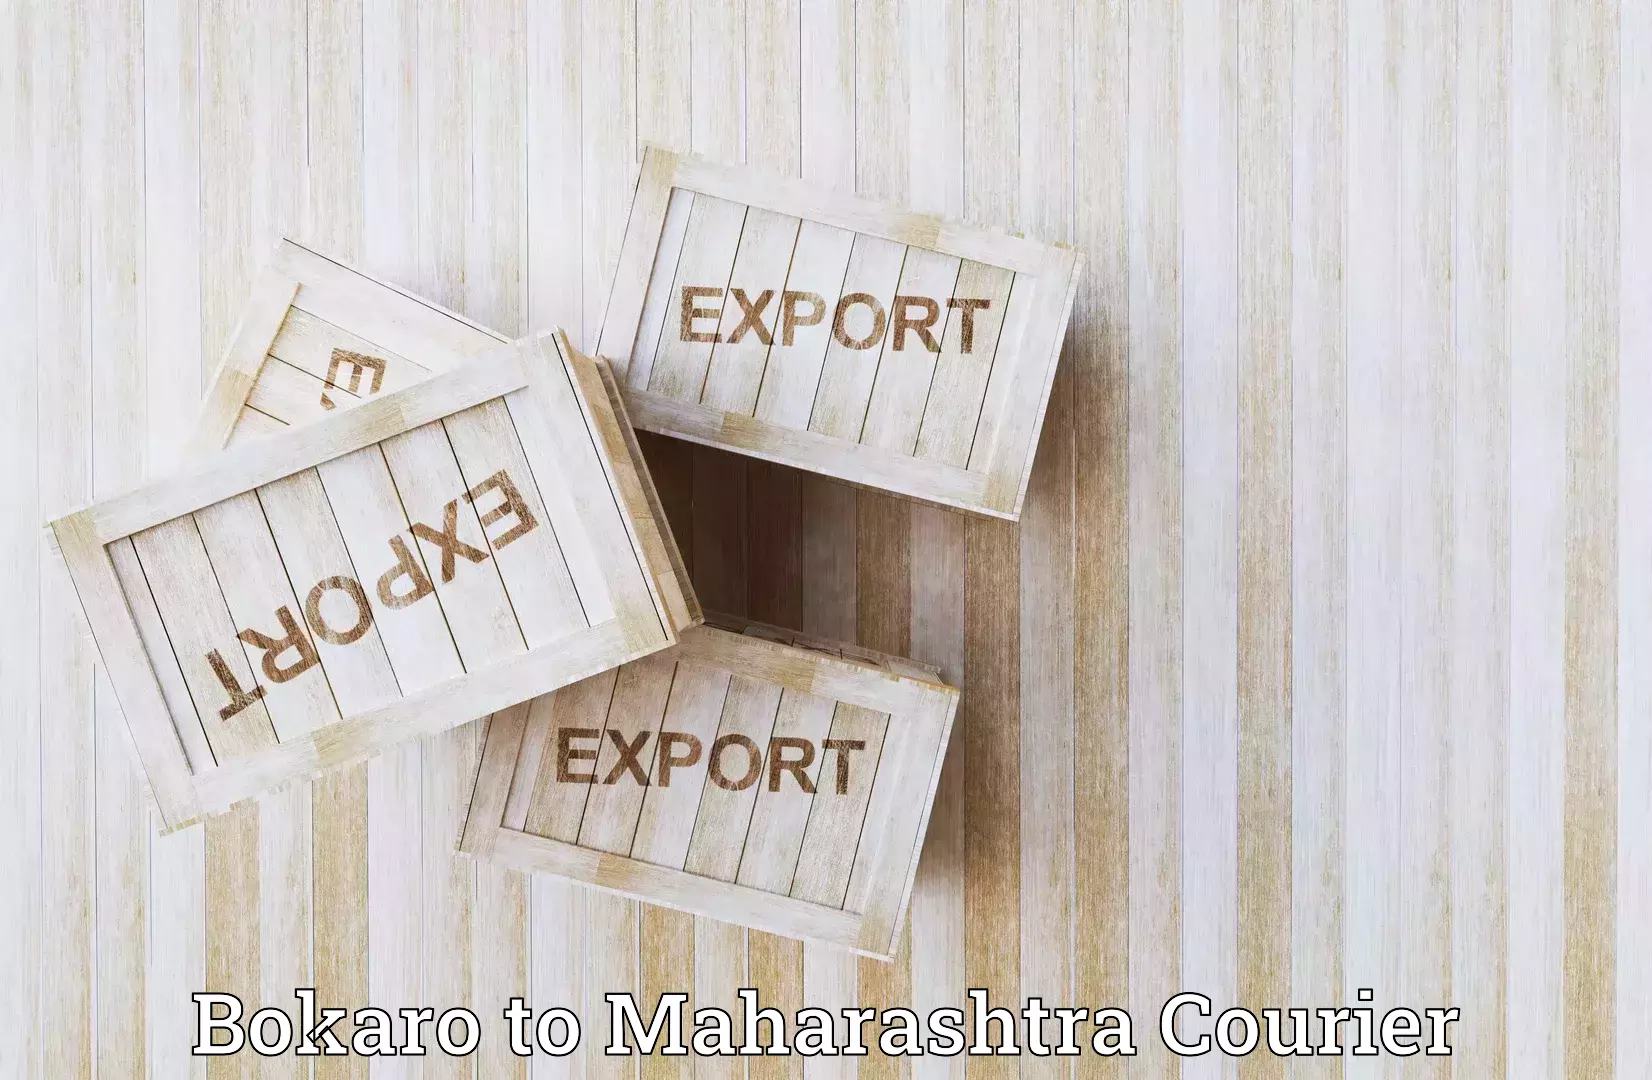 Smart shipping technology Bokaro to Maharashtra